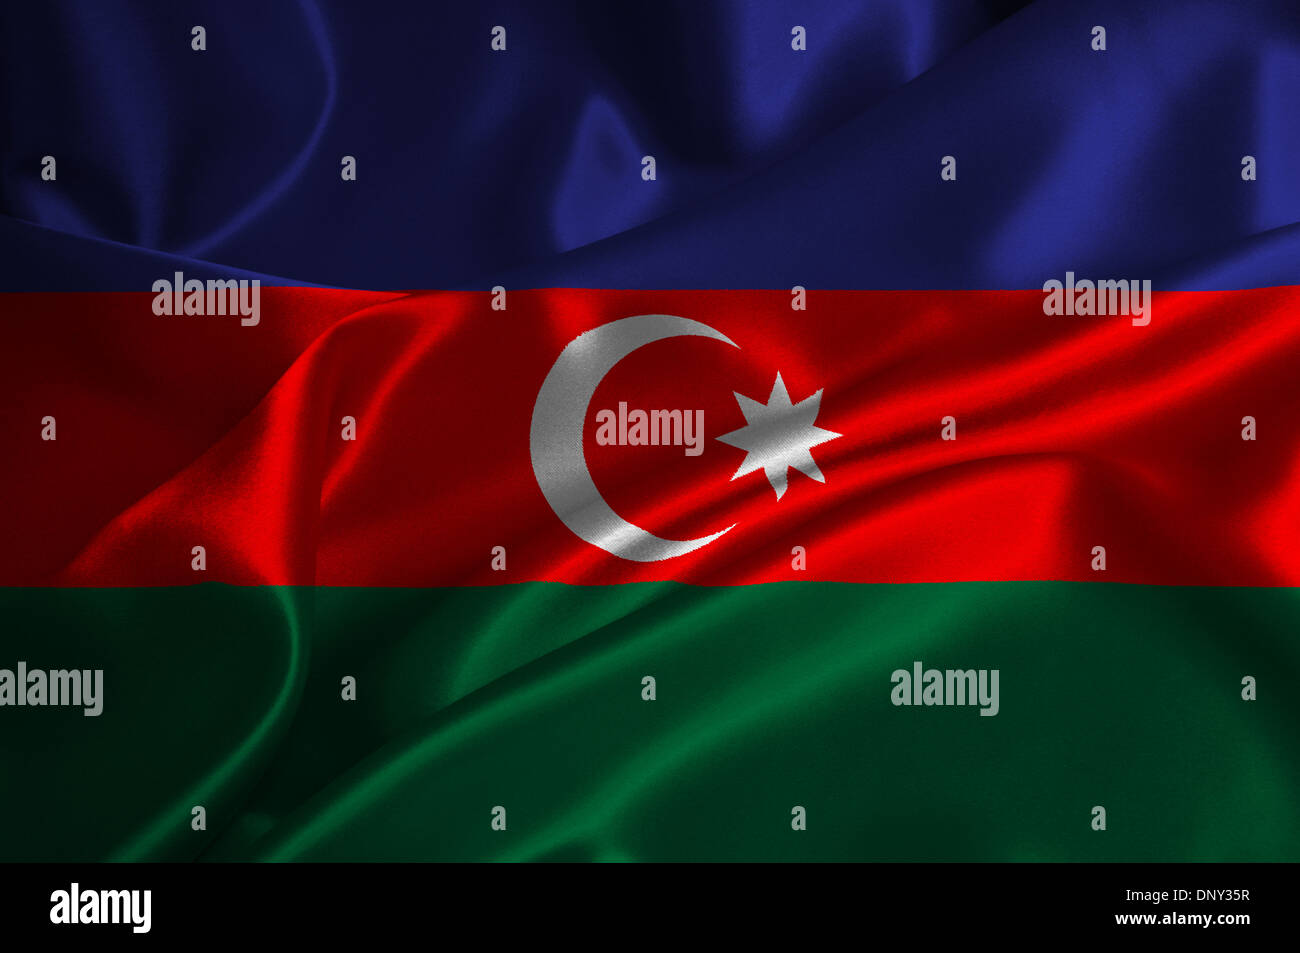 Azerbaijan flag on satin texture. Stock Photo